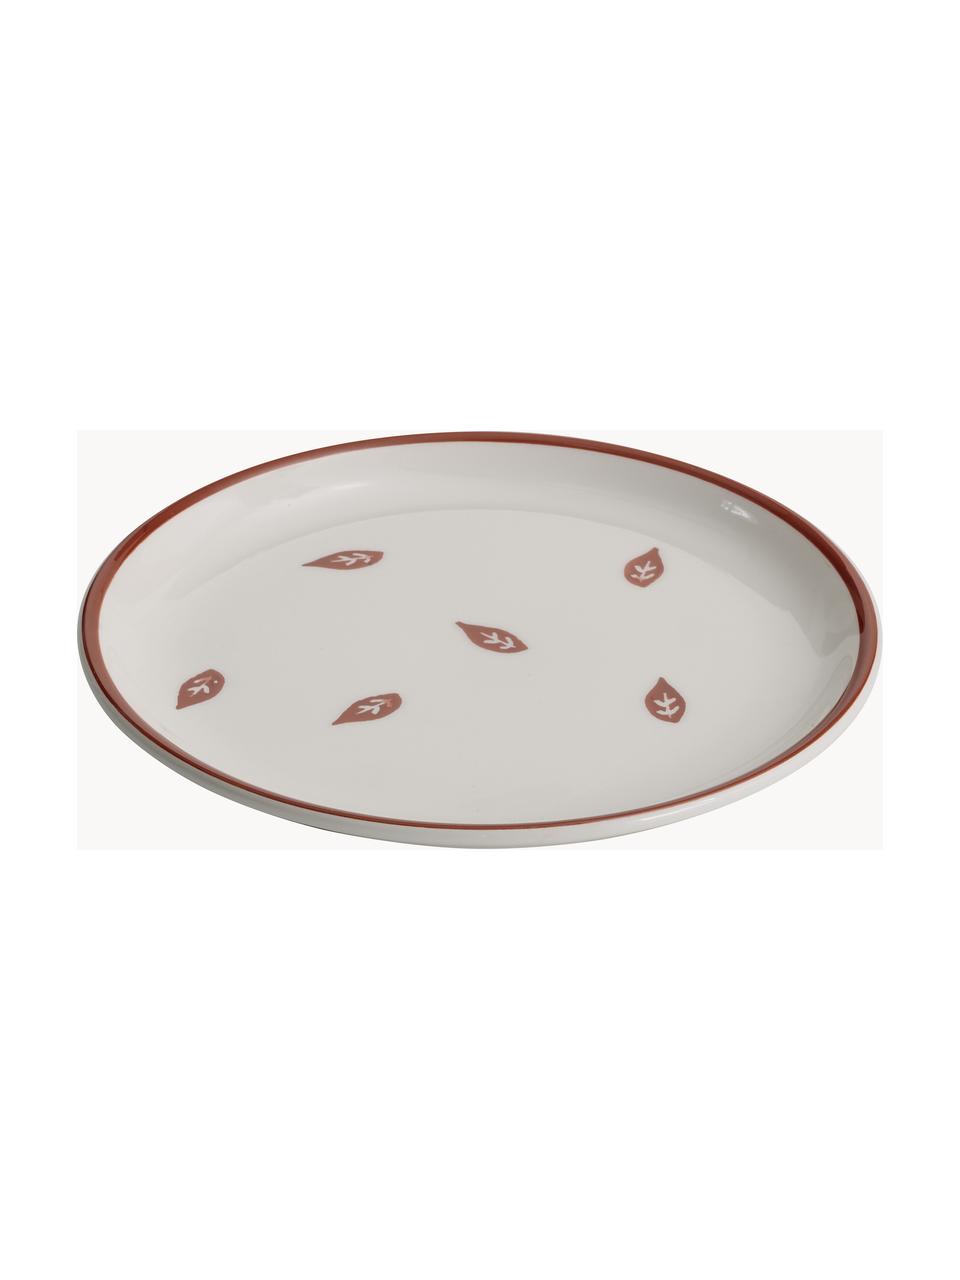 Sada ručně vyrobených snídaňových talířů Desserti, 6 dílů, Keramika, Více barev, tlumeně bílá, Ø 23 cm